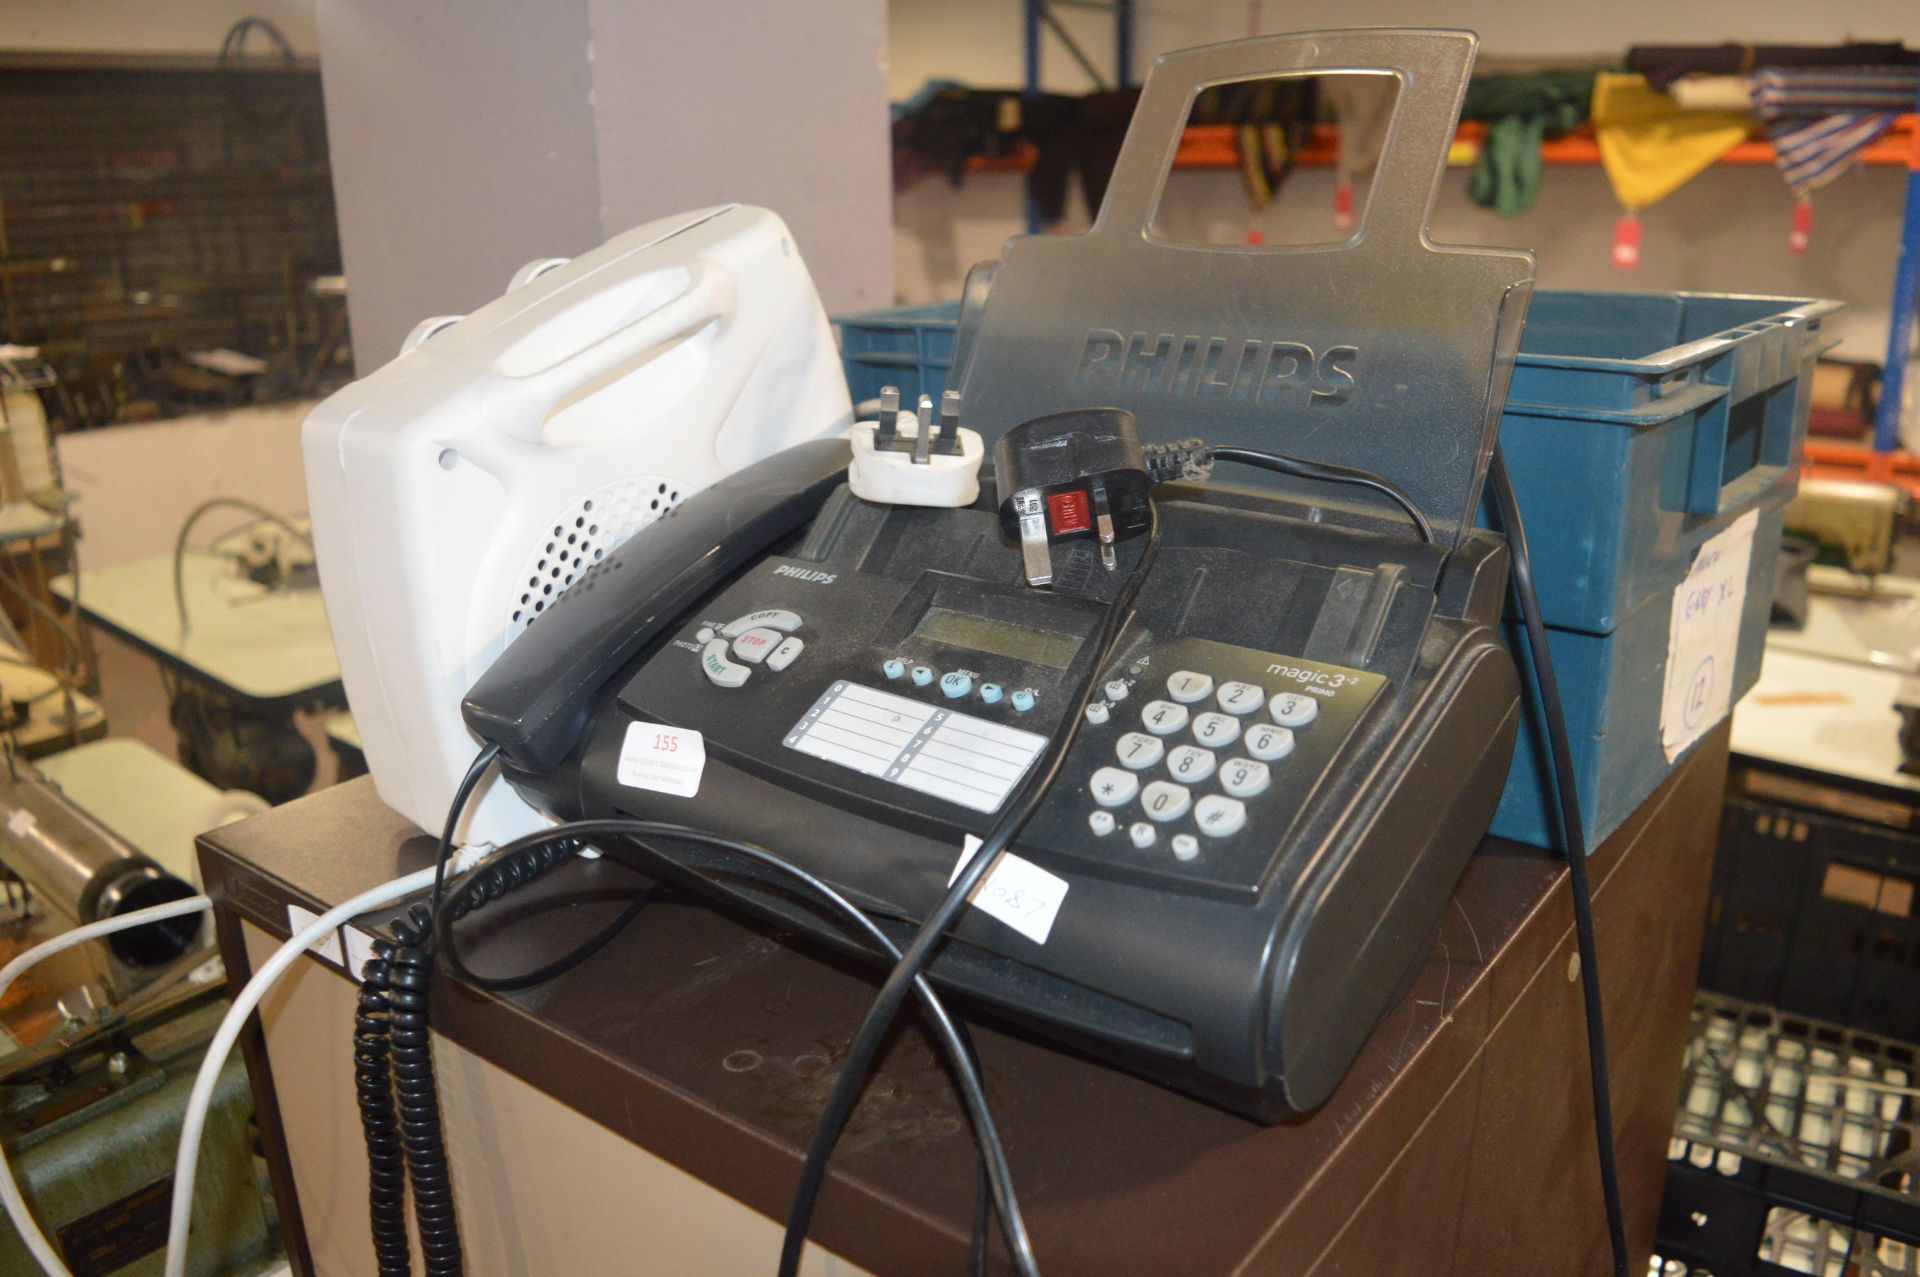 Philips Magic 3-2 Premo Fax Machine, Heater, and a Quantity of Tape